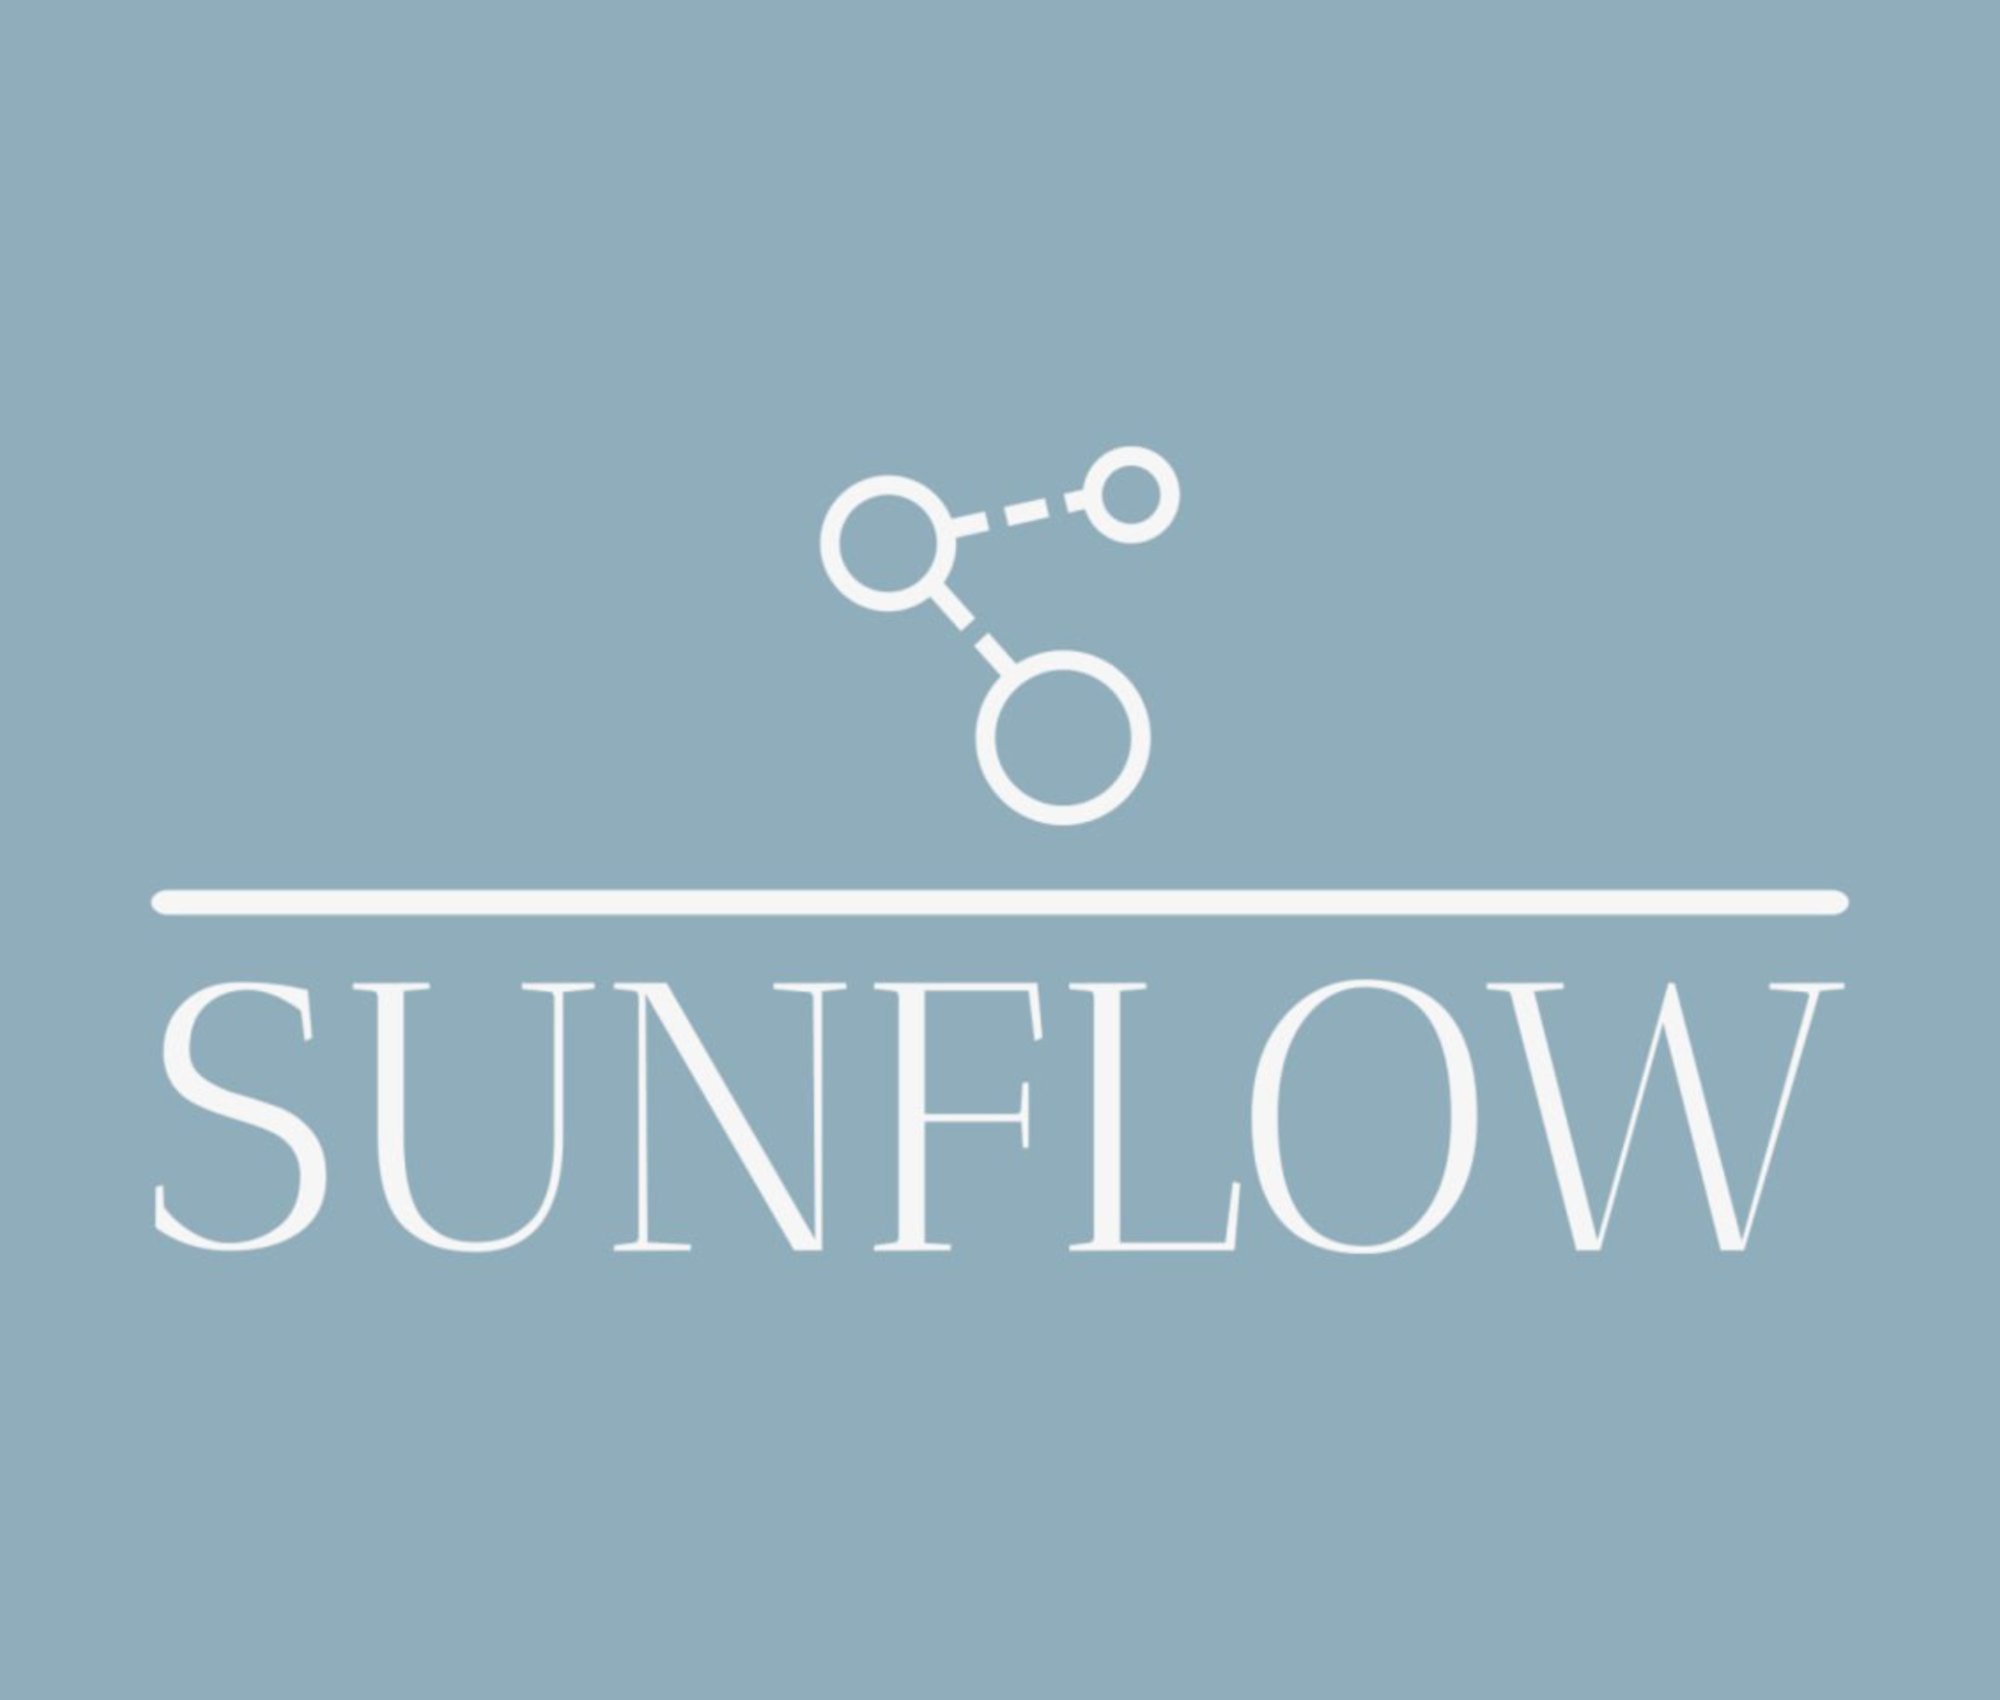 Sunflow